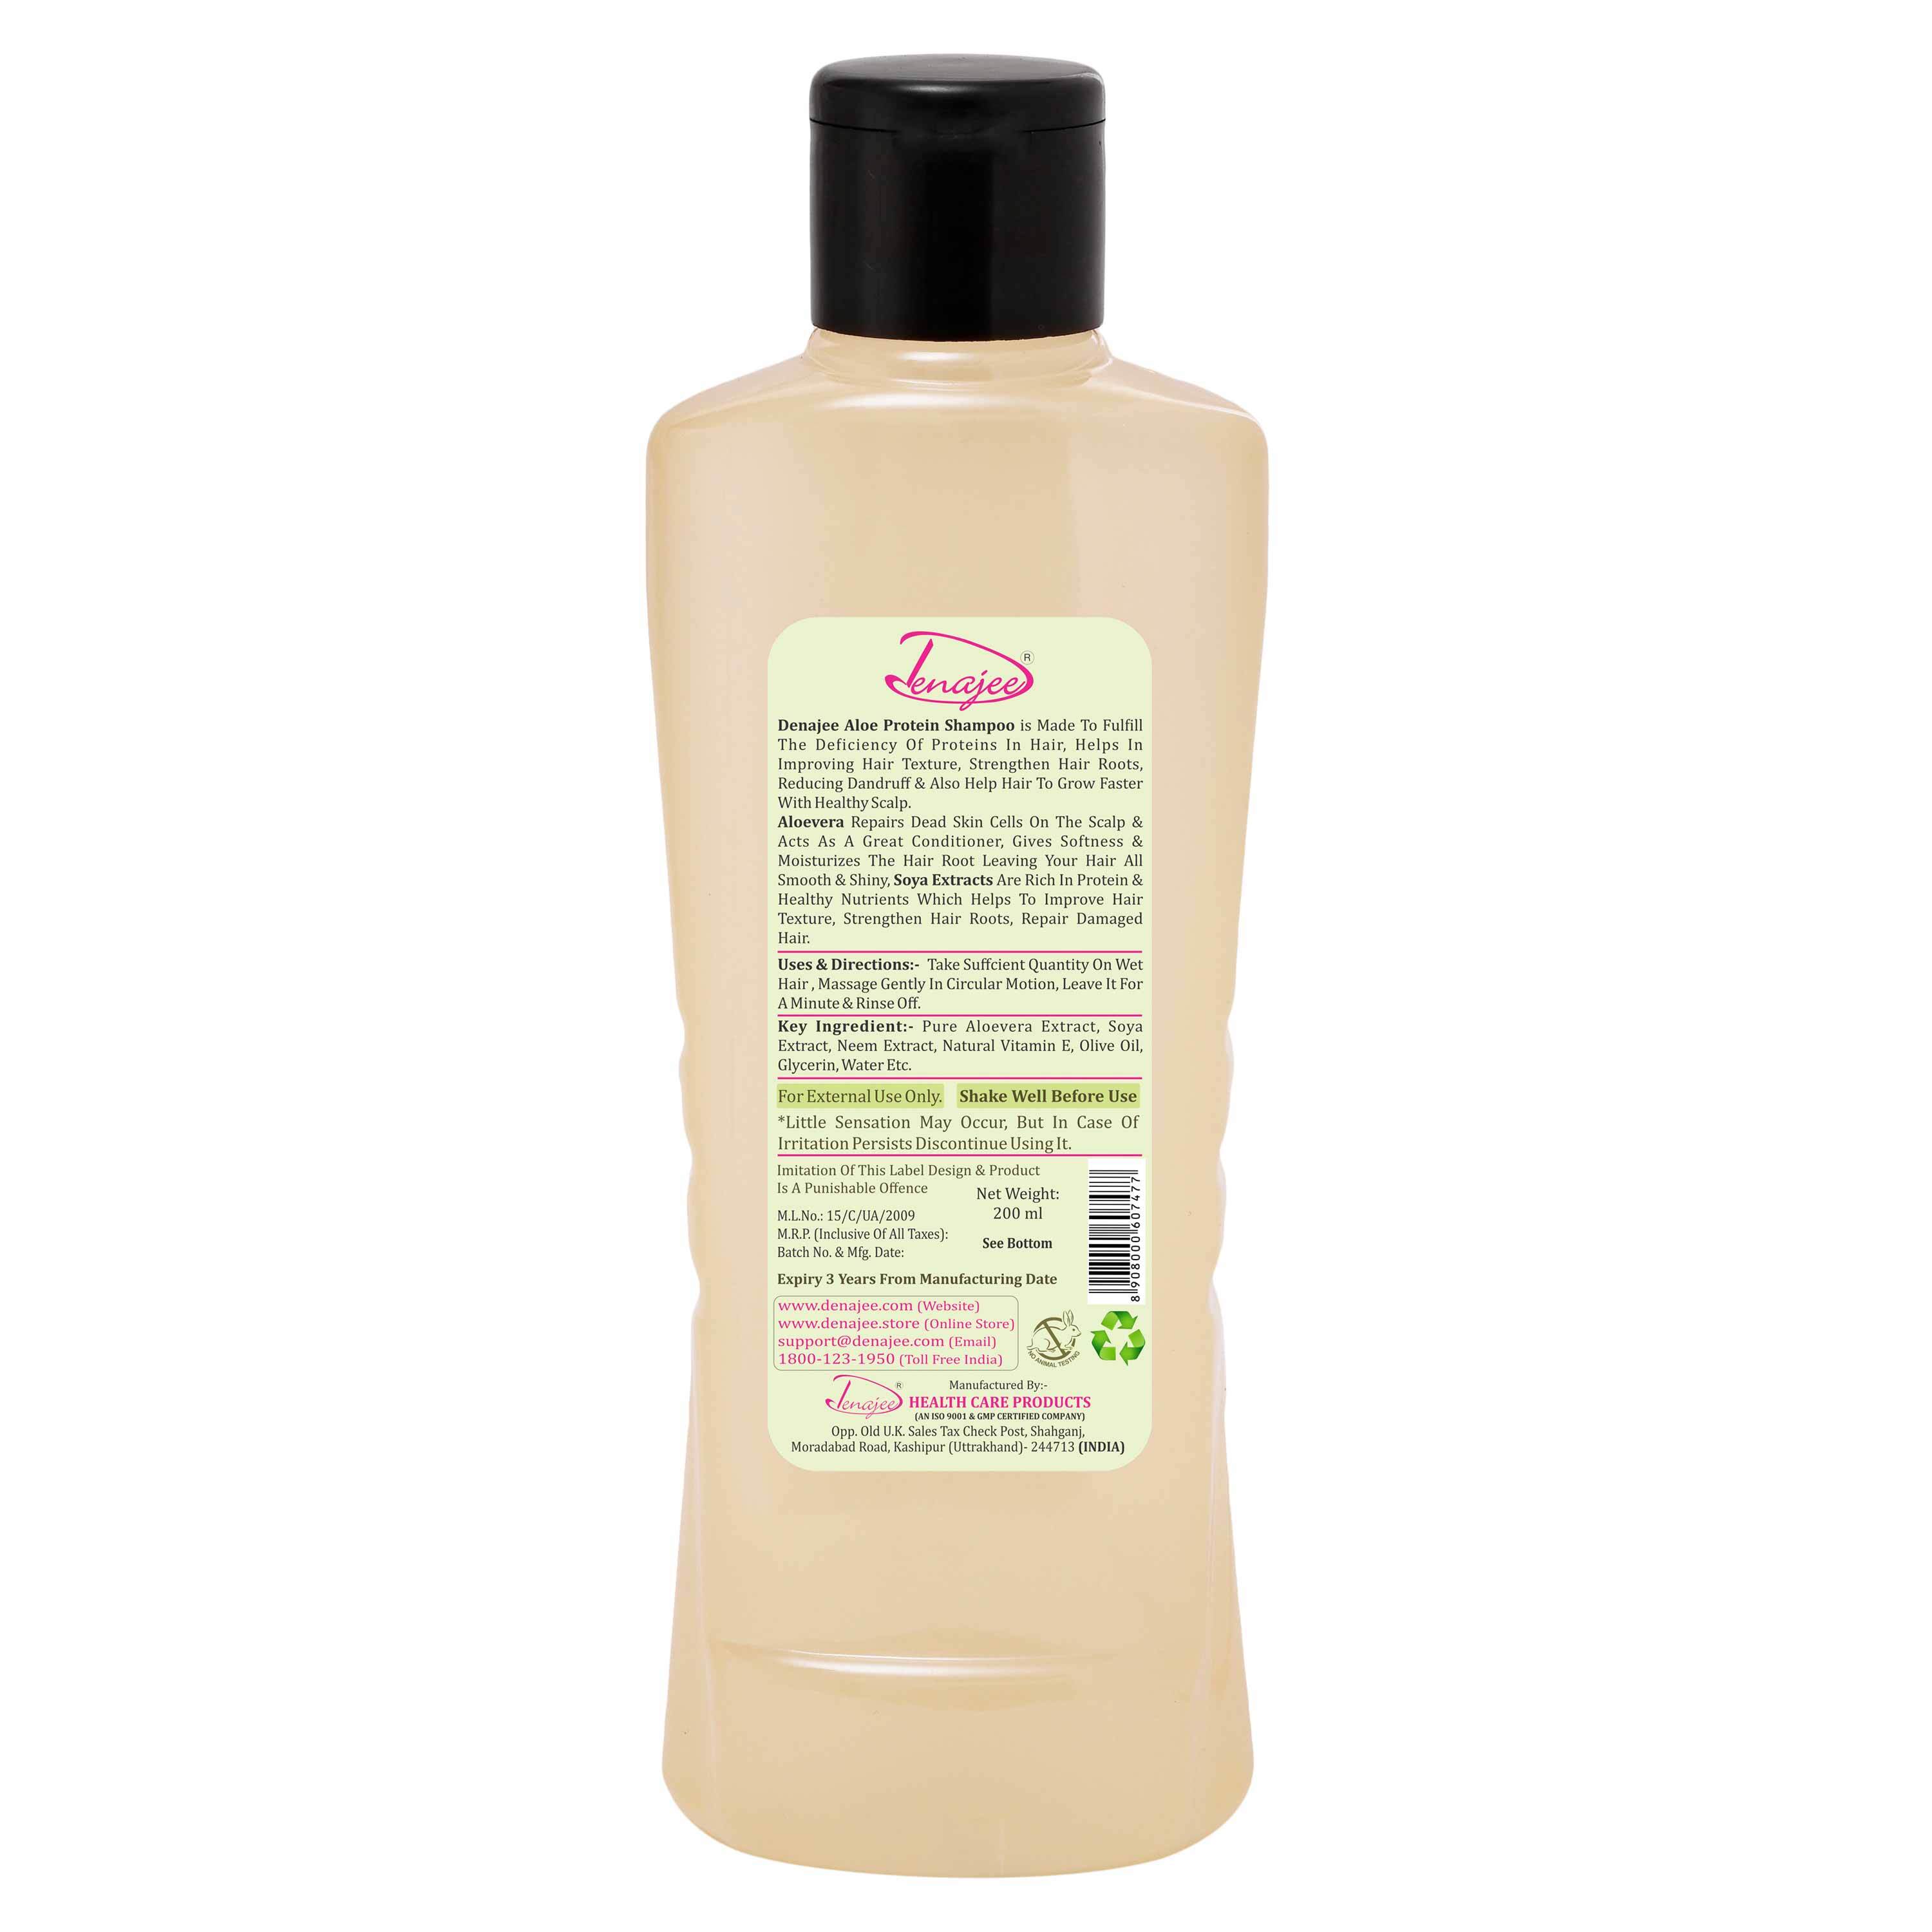 Denajee Aloe Protein Shampoo